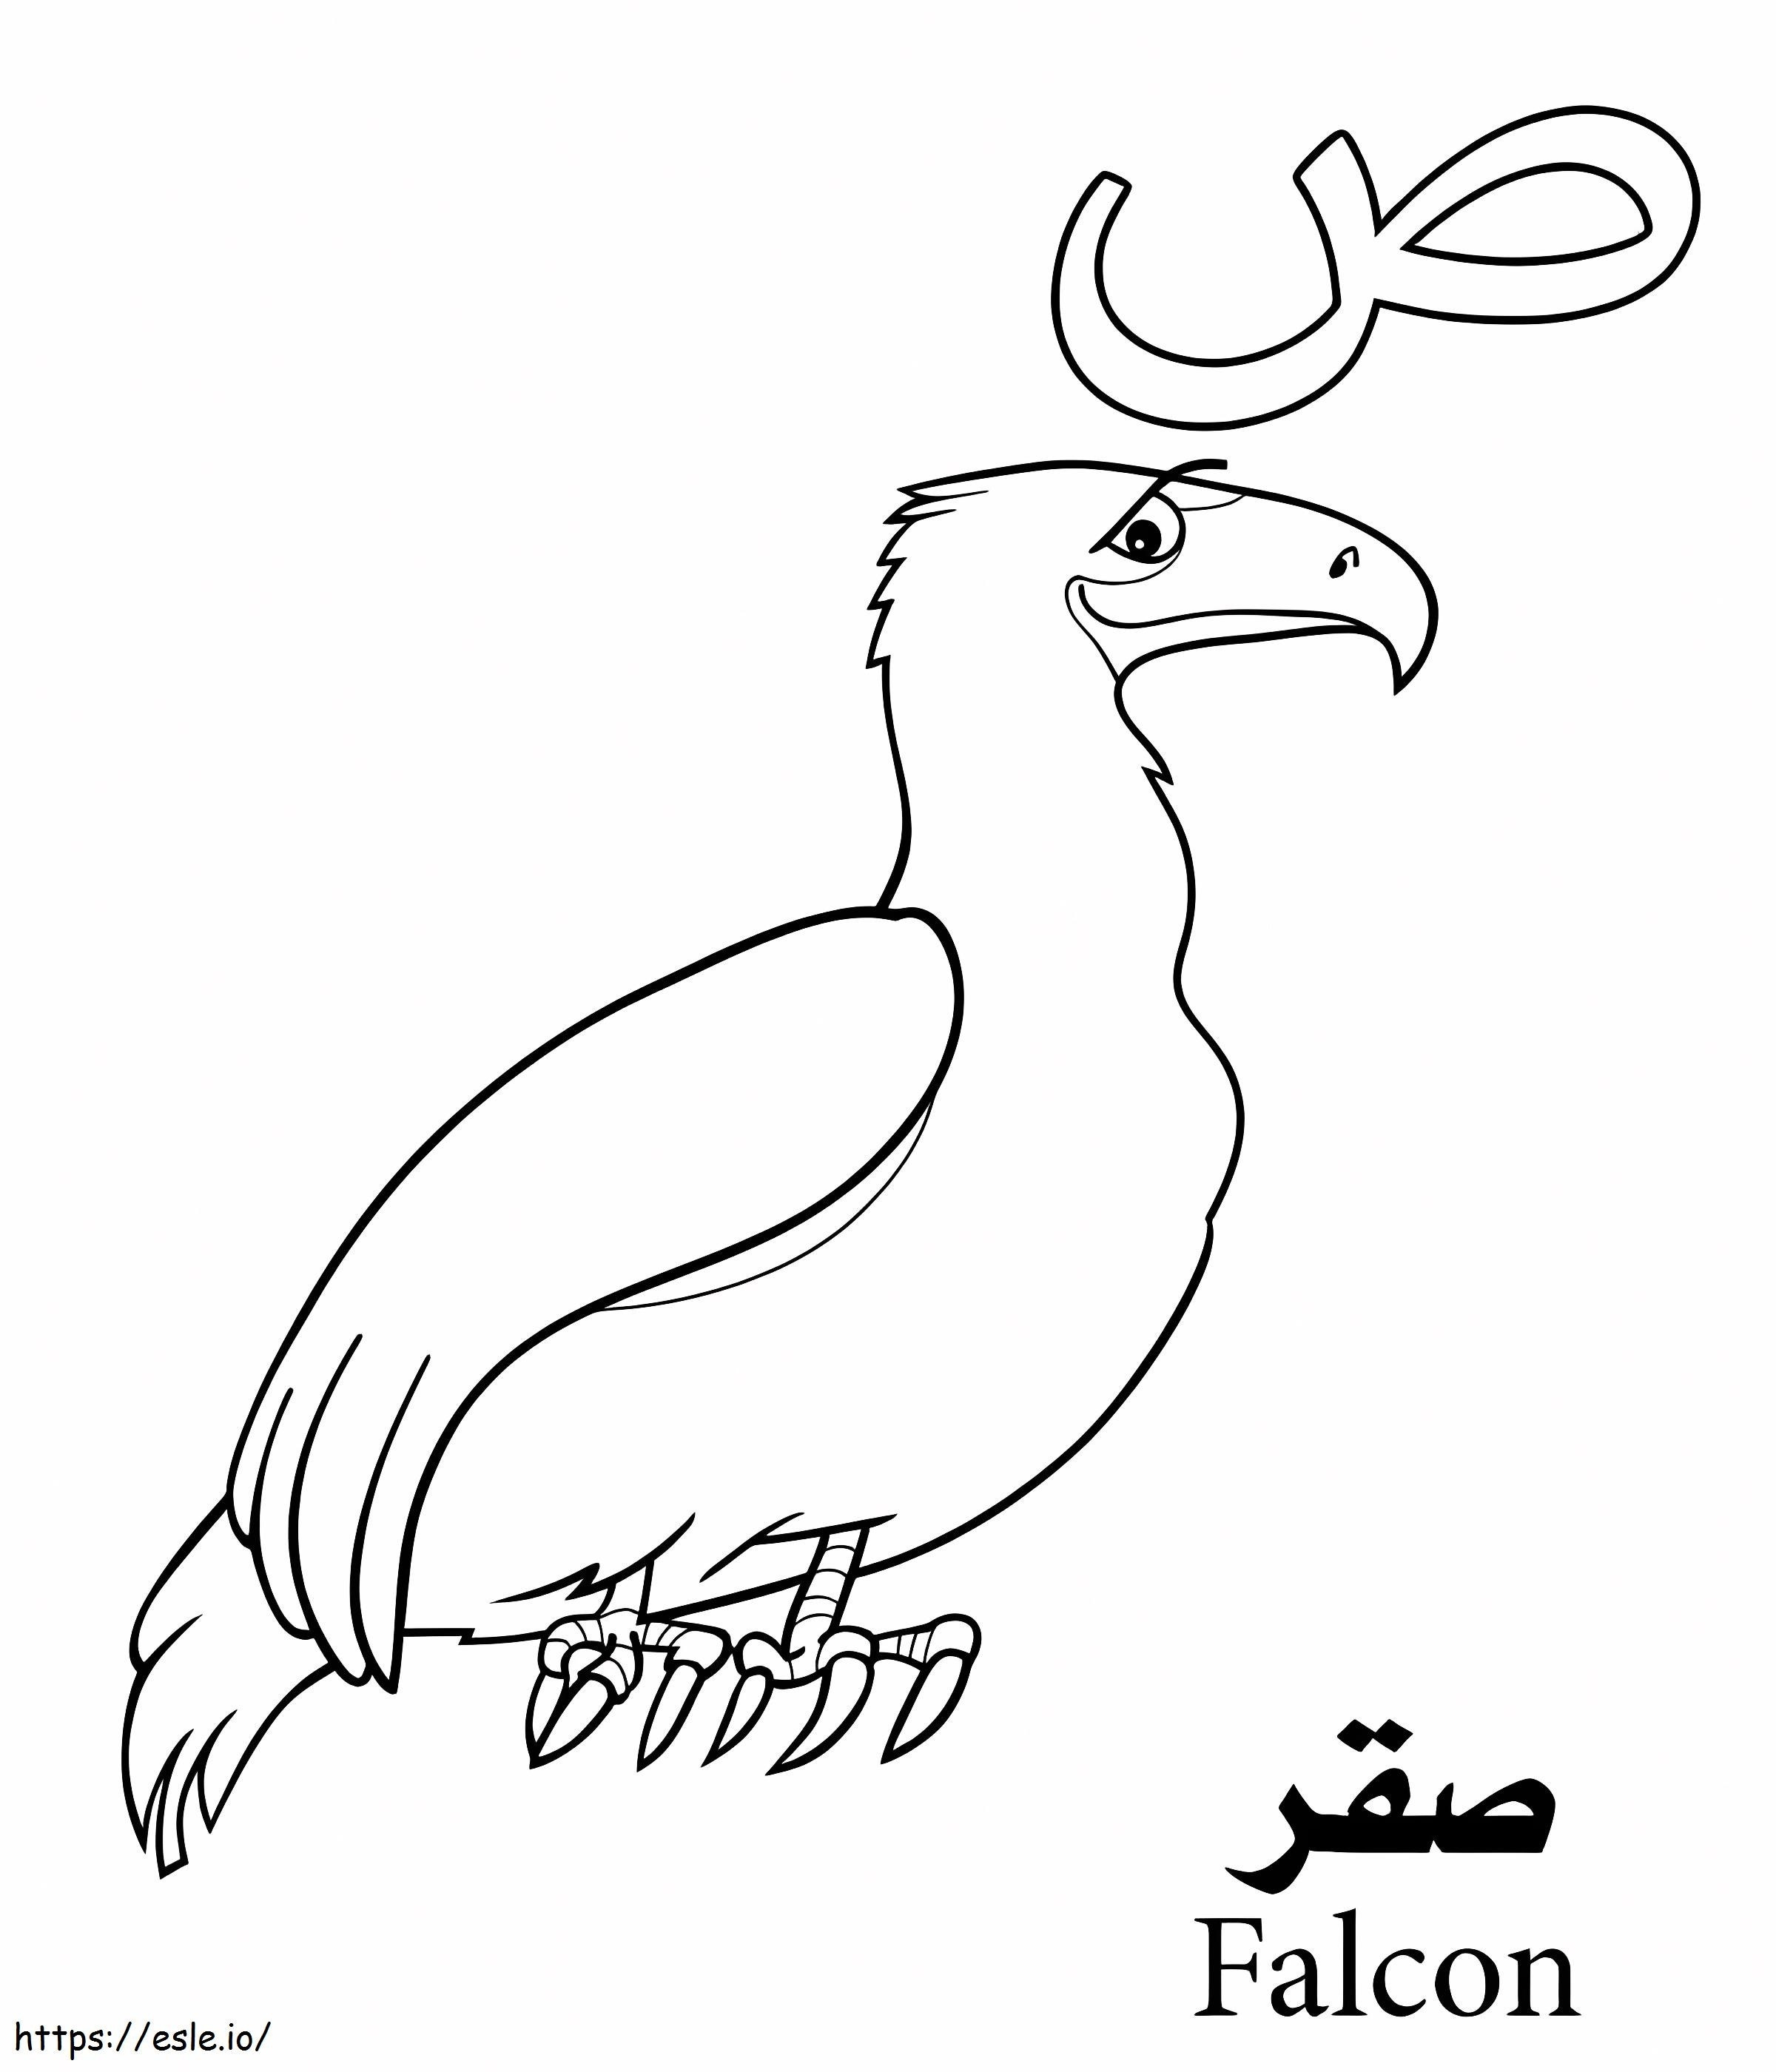 Arabisches Falcon-Alphabet ausmalbilder